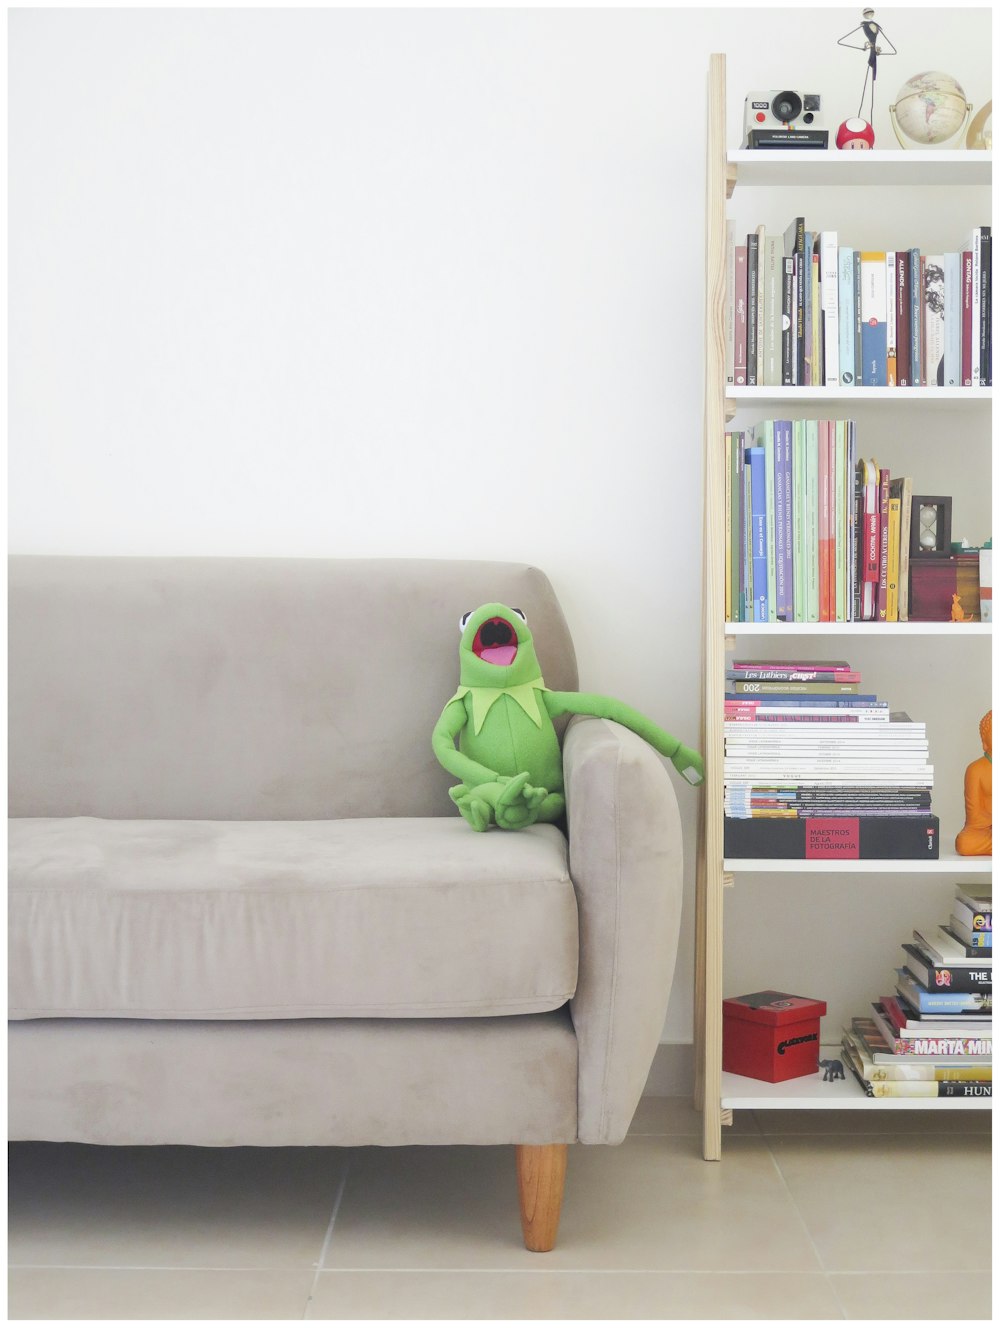 Das Muppets Kermit Plüschtier auf grauem Sofa